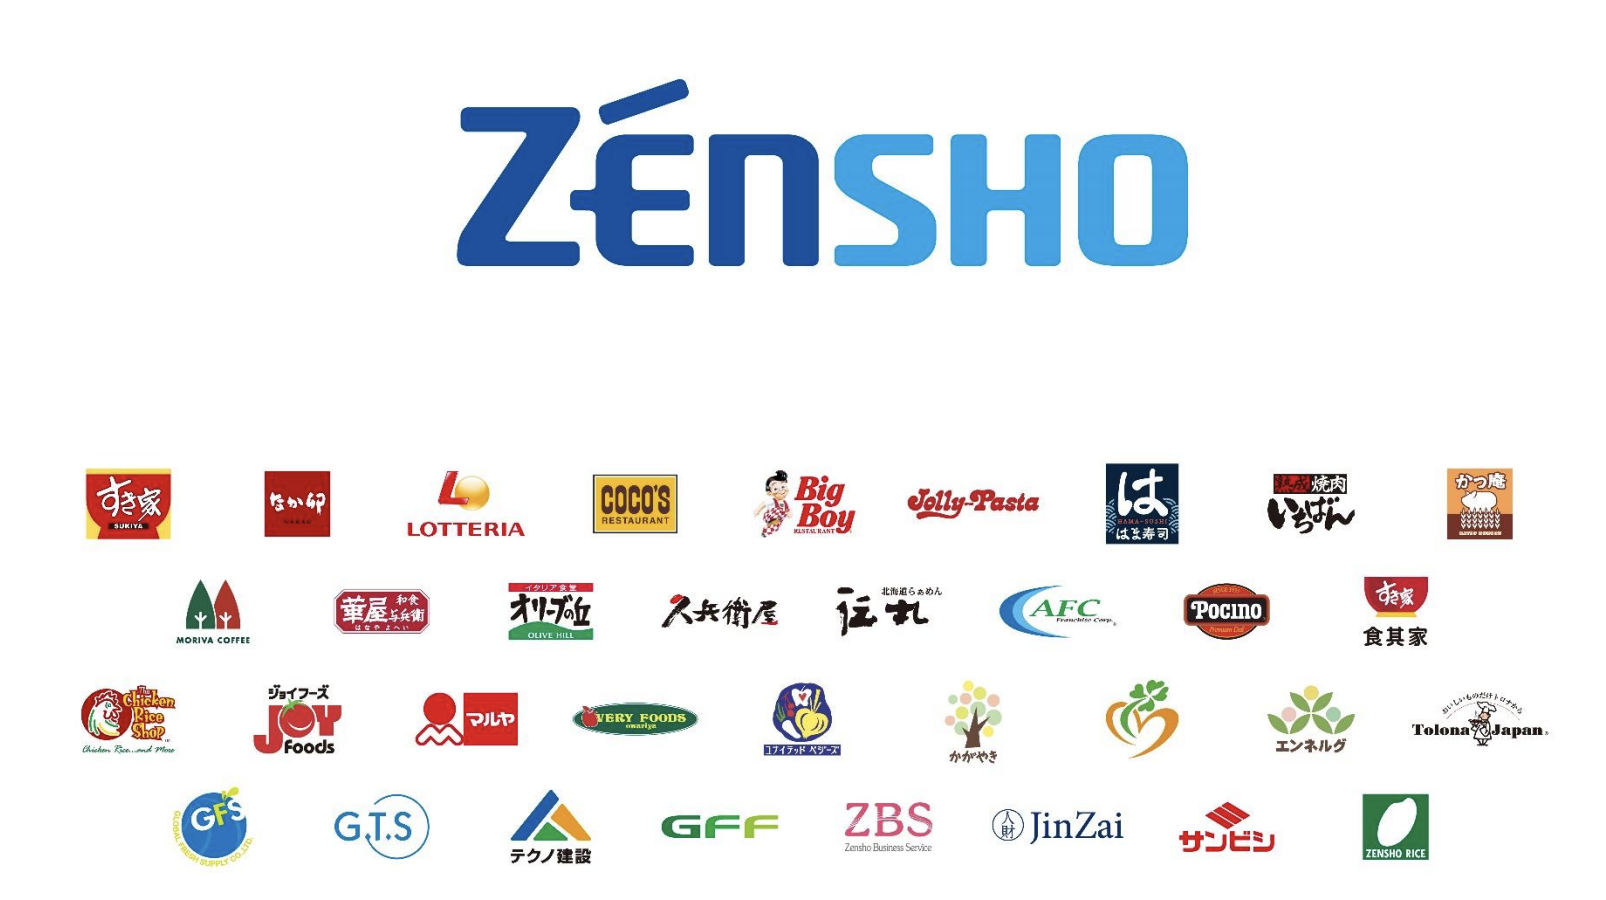 Chuỗi nhà hàng Zensho Holdings được thành lập vào năm 1982 và niêm yết trên sàn chứng khoán Nhật Bản vào năm 1997. Các nhà hàng của nó bao gồm chuỗi nhà hàng thịt bò Sukiya, quán ăn băng chuyền Hama Sushi và các nhà hàng gia đình Coco's và Jolly Pasta.